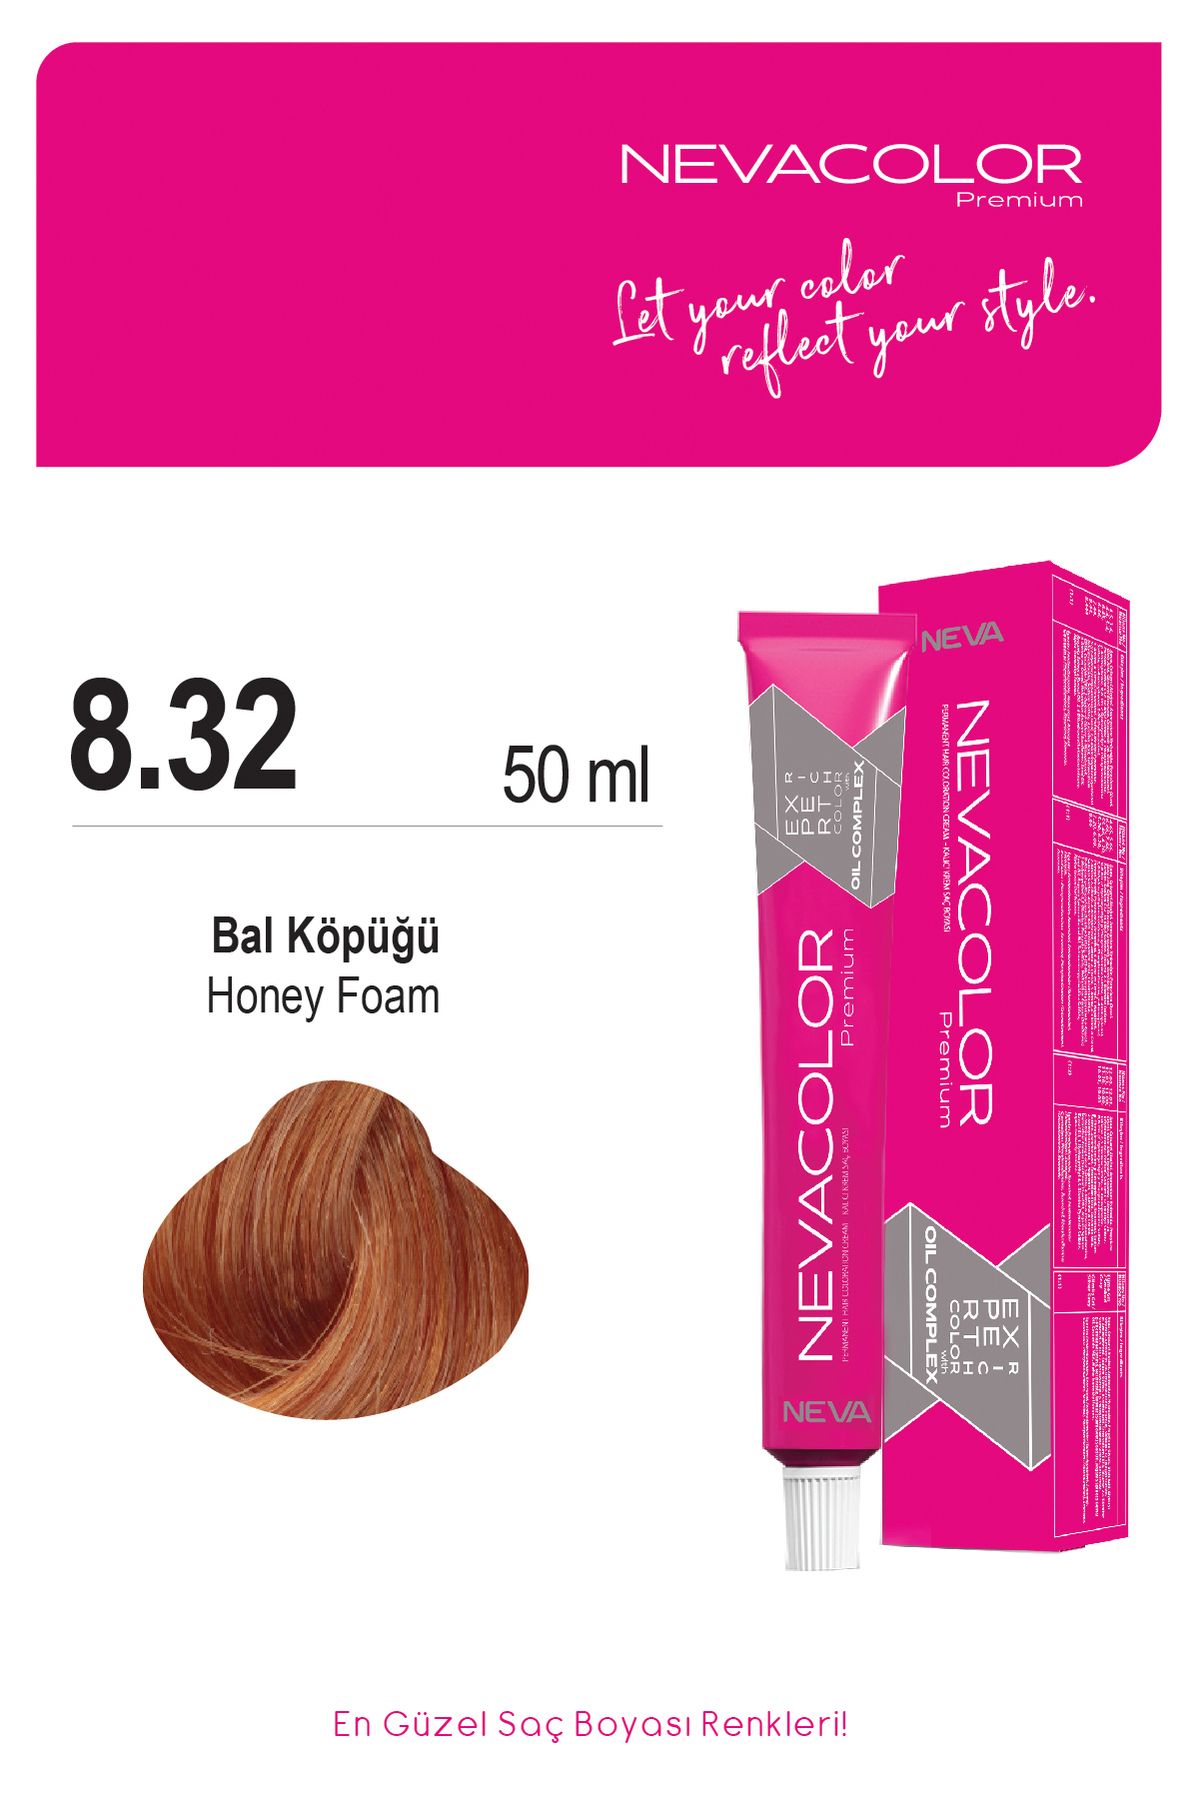 Nevacolor Premium 8.32 BAL KÖPÜĞÜ Kalıcı Krem Saç Boyası 50ml